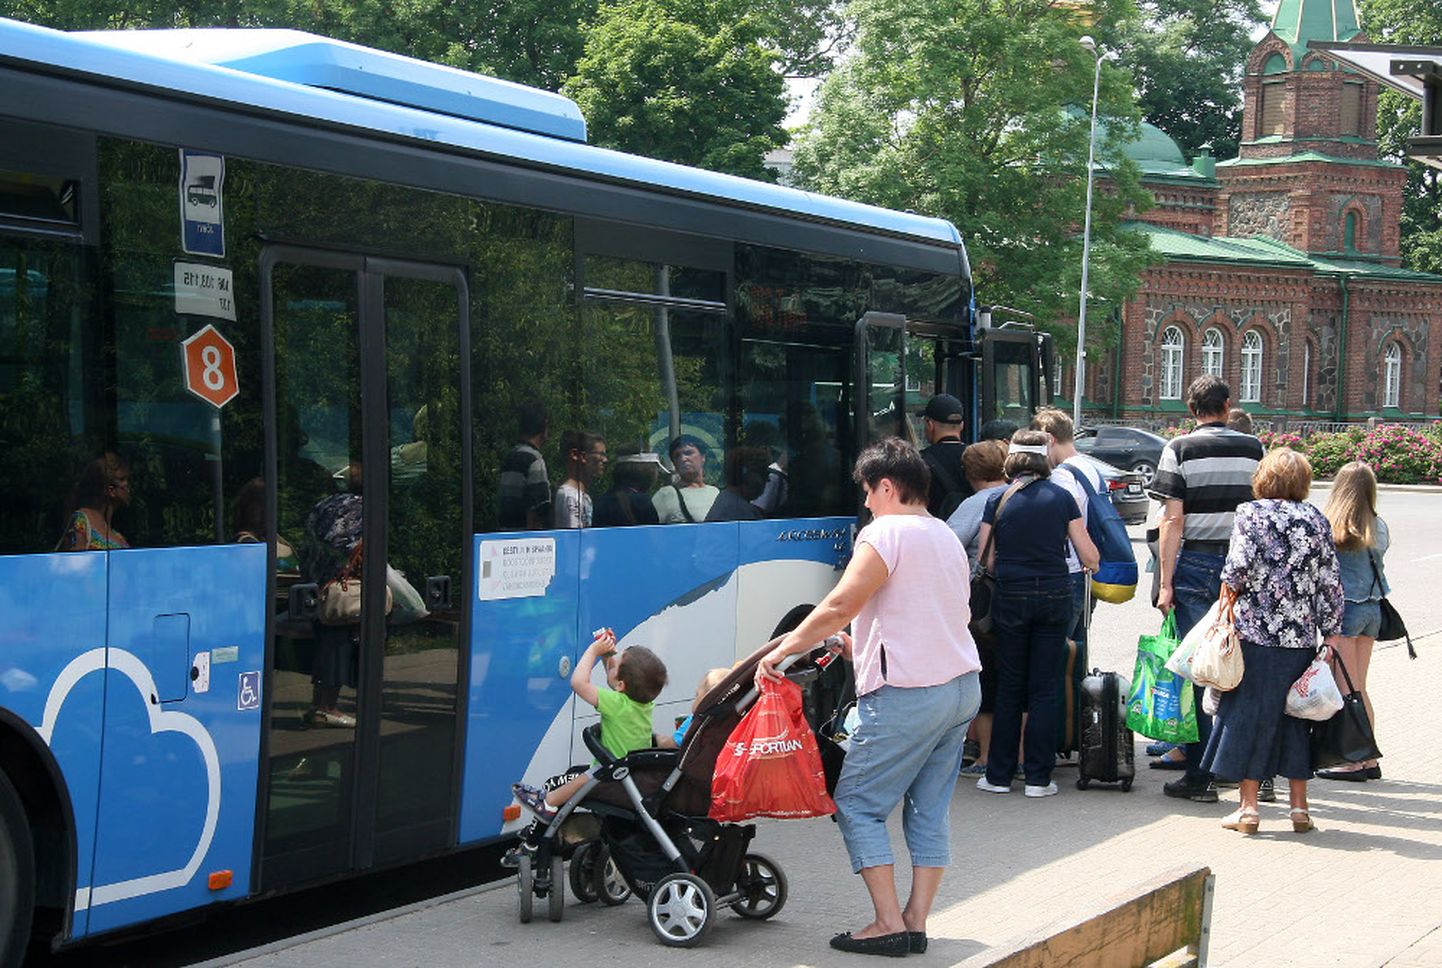 Tasuta bussisõit edaspidi pileti ostmisest ei päästa − olgugi nullpilet, tuleb see bussijuhilt saada ja sõidu lõpuni alles hoida.  

PEETER LILLEVÄLI